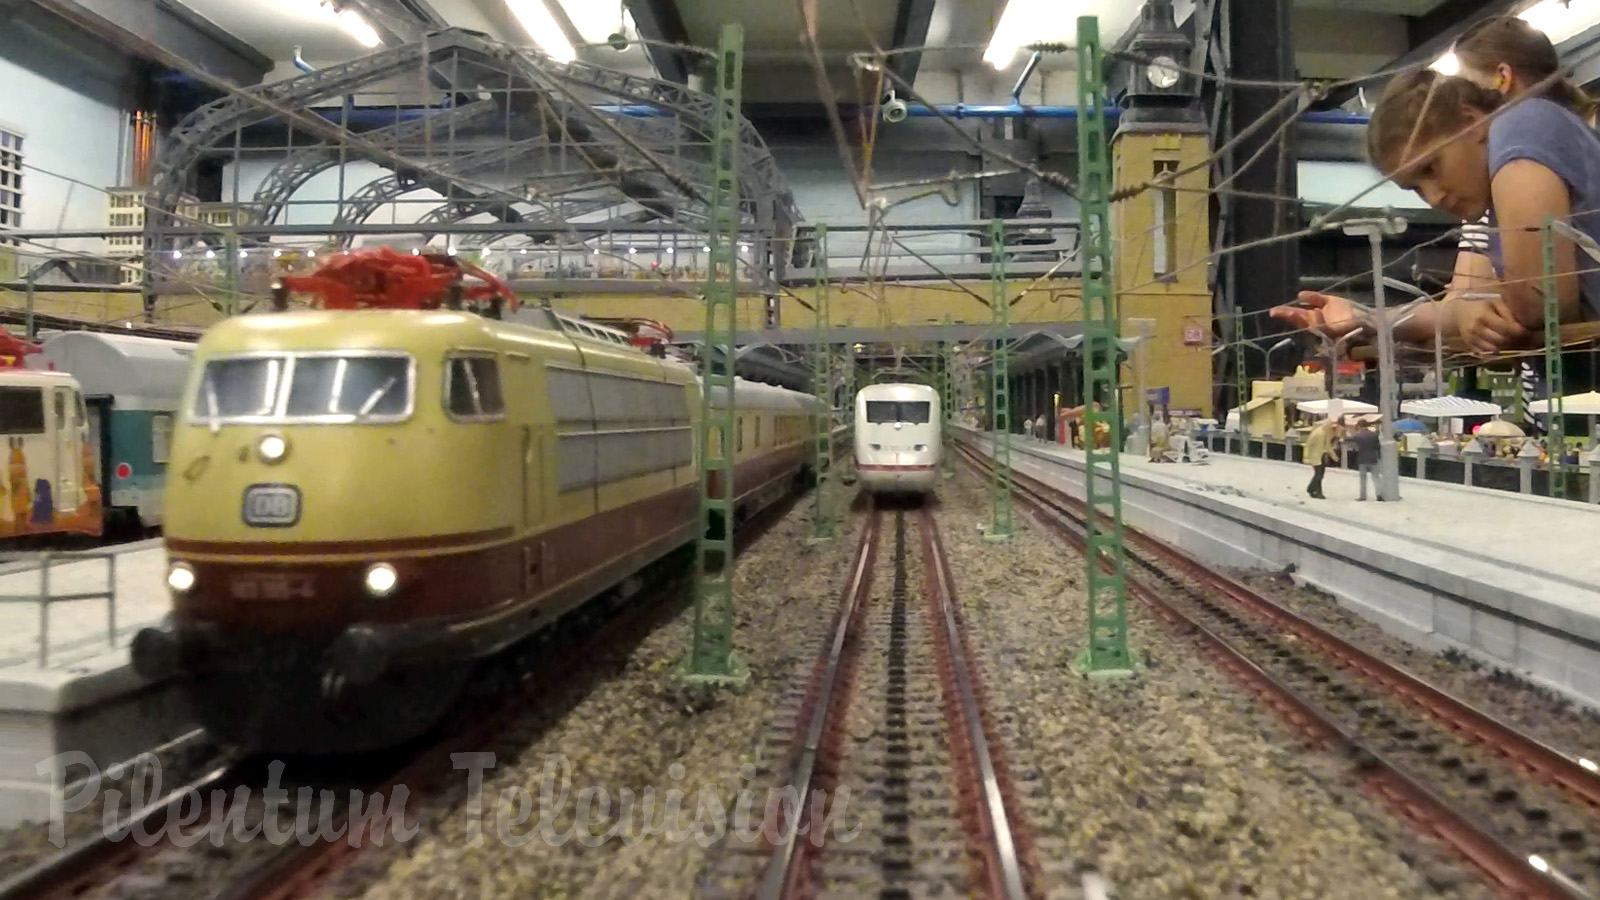 Voyage en train à grande vitesse dans le monde miniature - Modèles réduits de trains à l'échelle H0